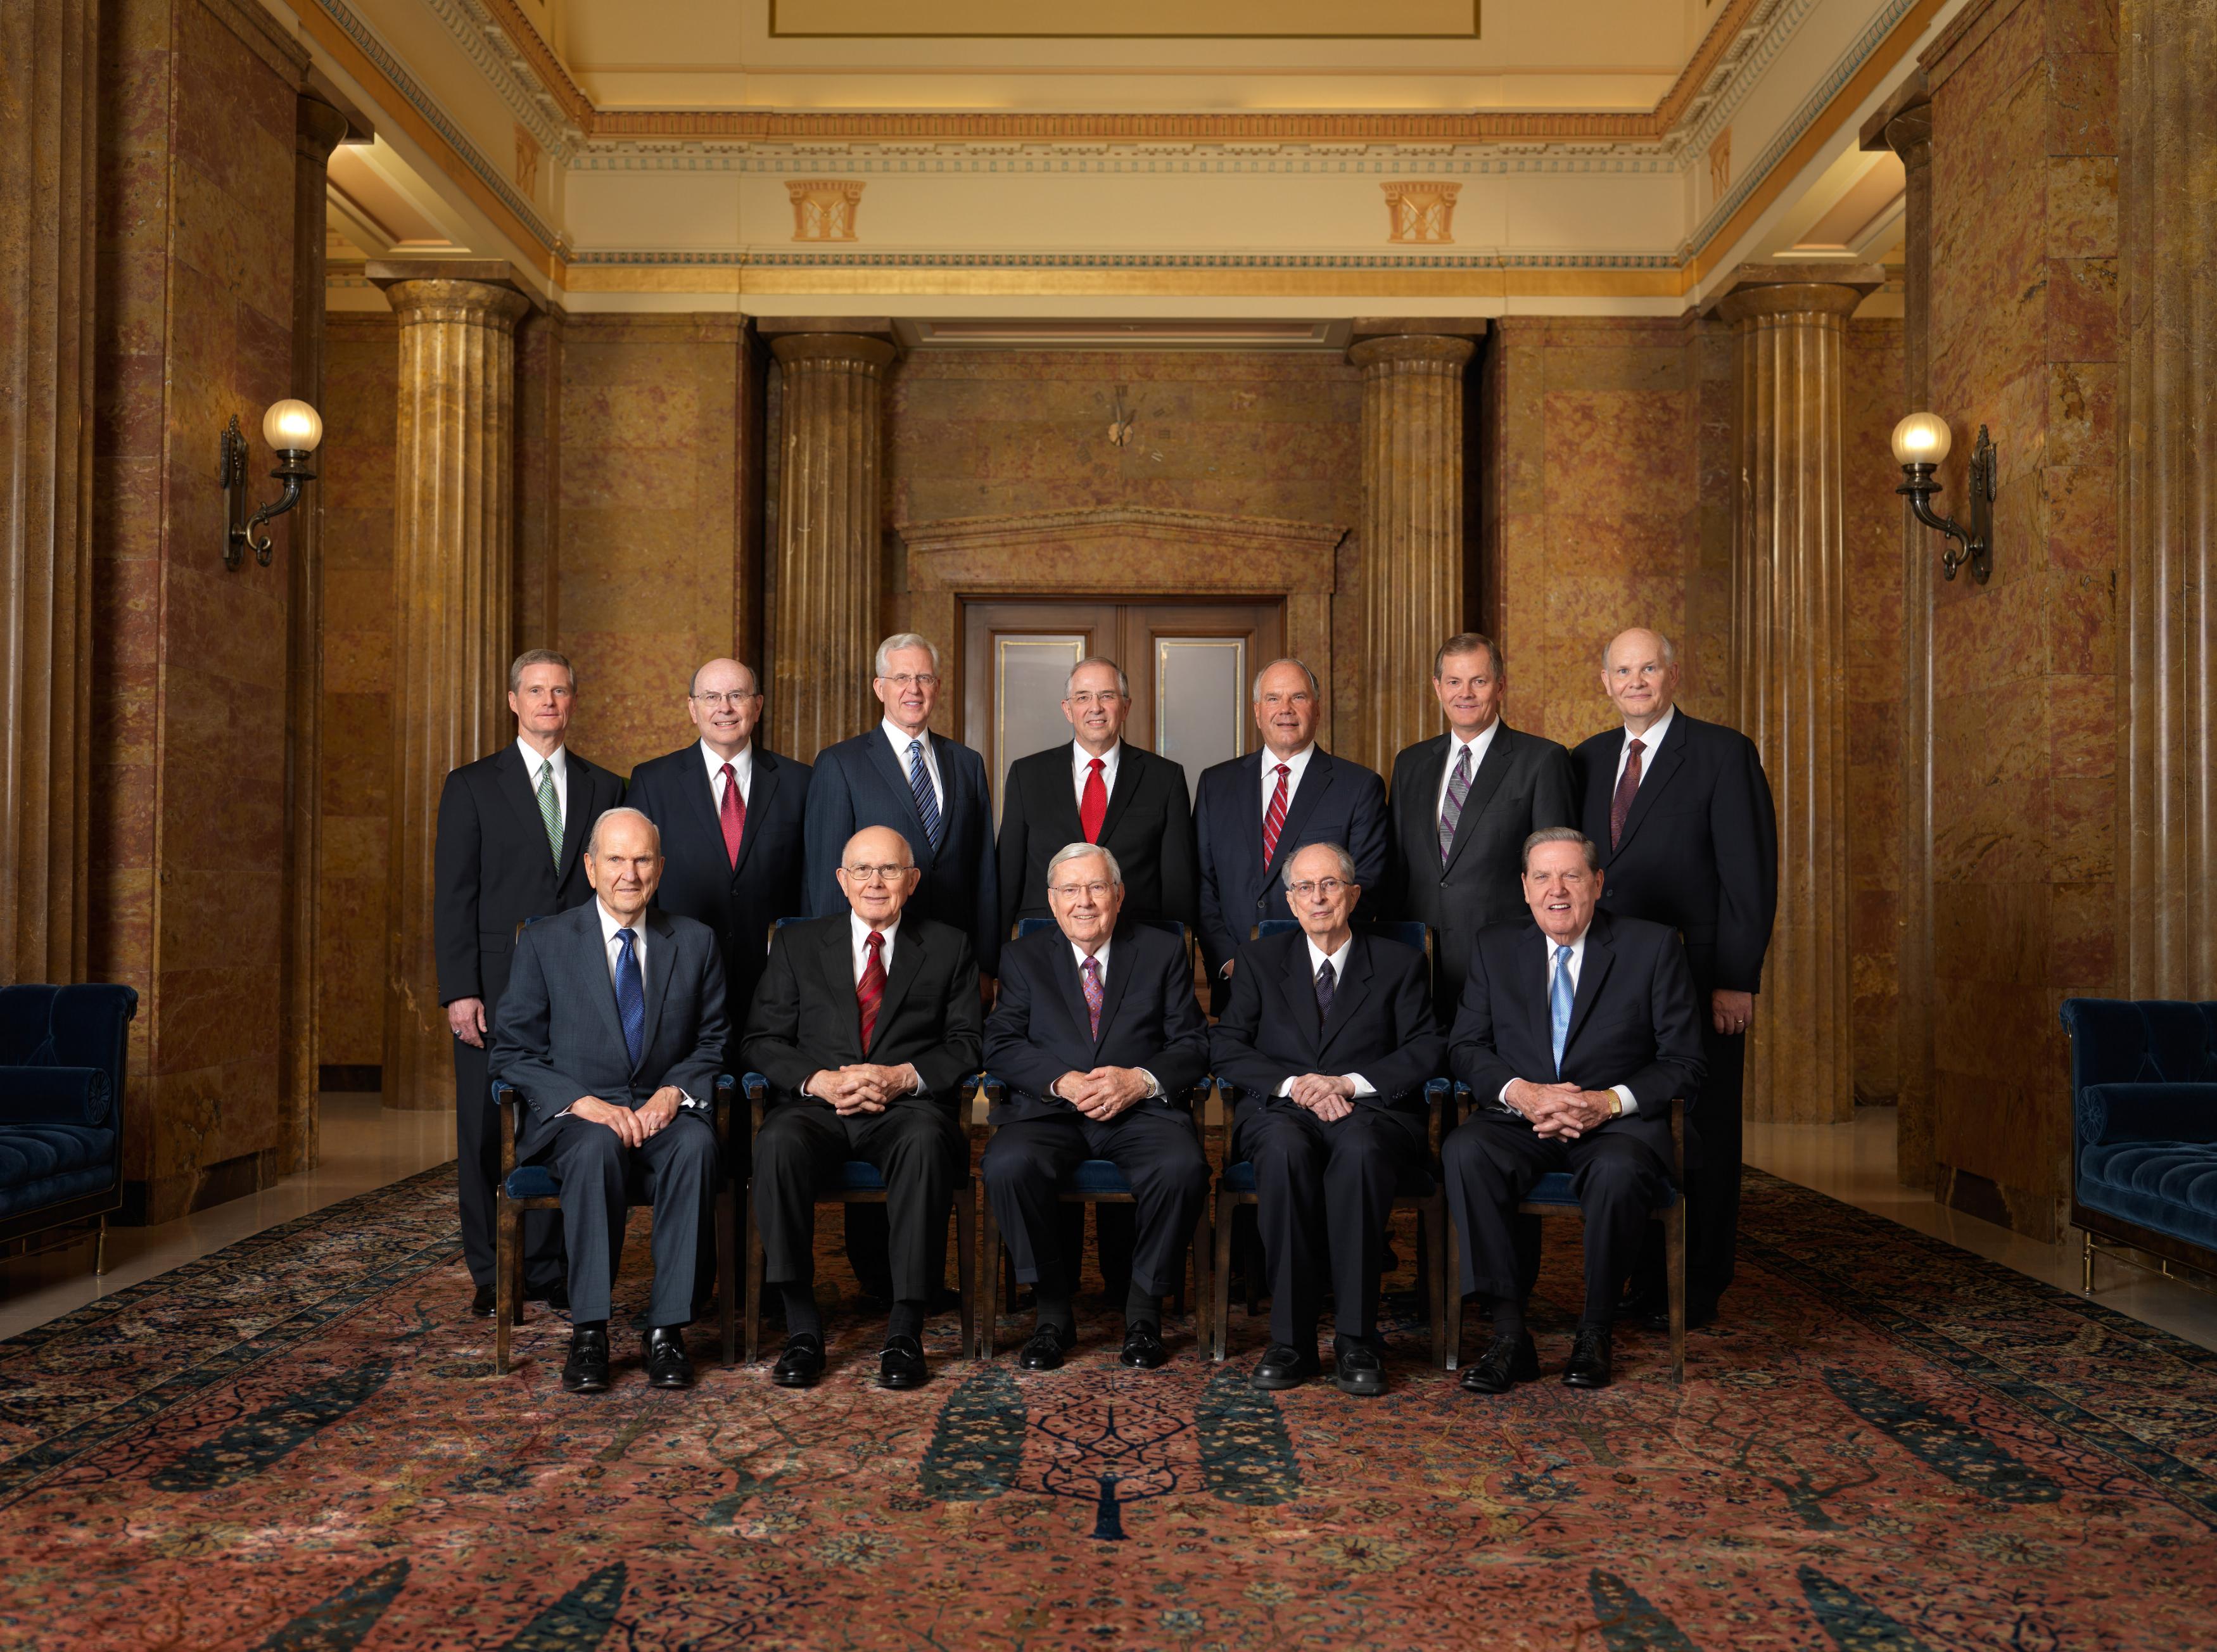 Download New Photo of LDS Quorum of the Twelve & General Authorities